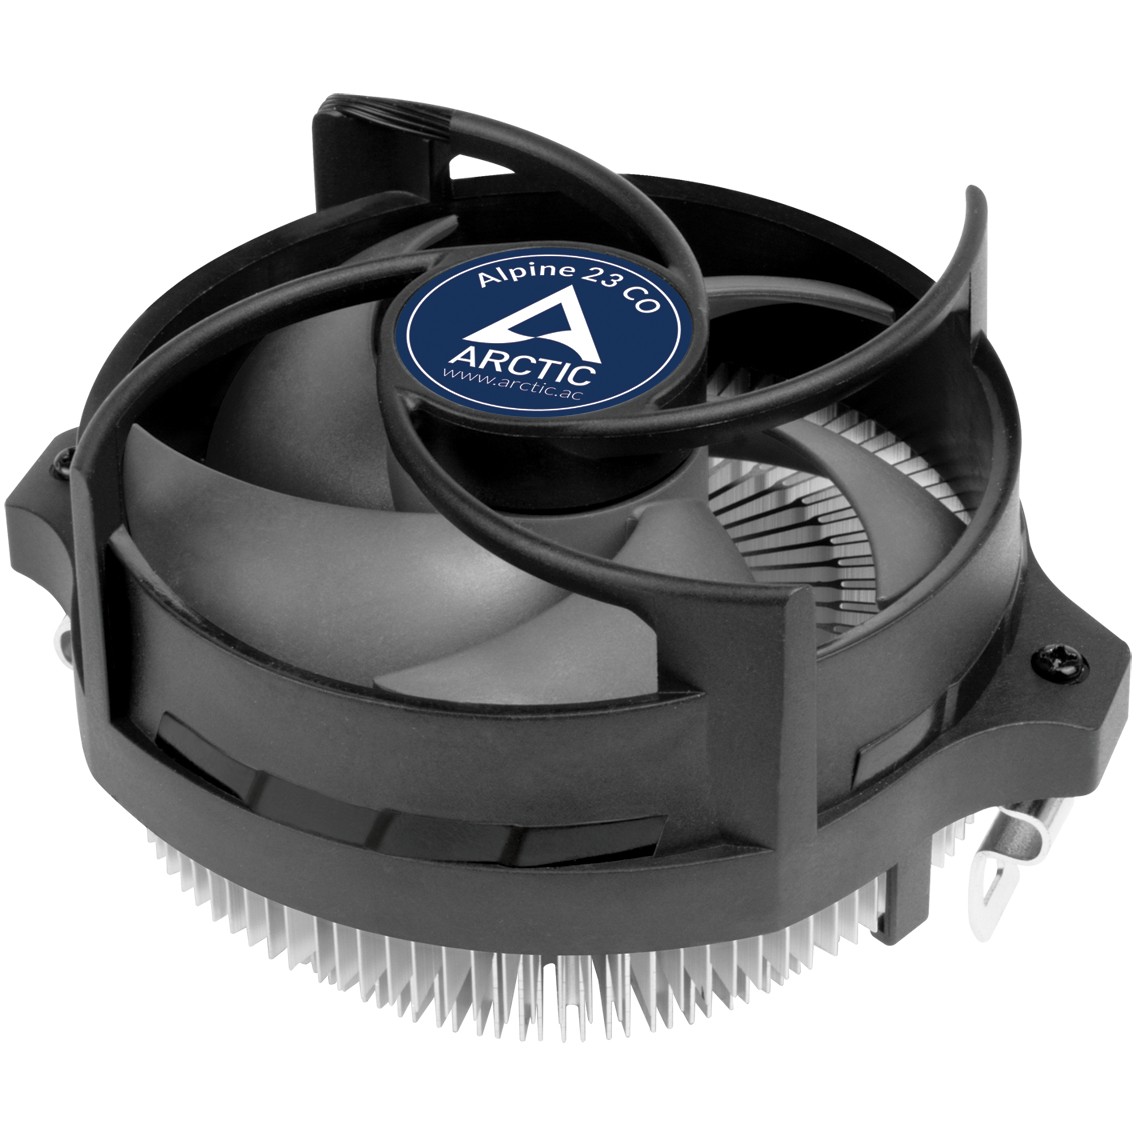 ARCTIC Alpine 23 CO - Kompakter AMD CPU-Kühler für den Dauerbetrieb